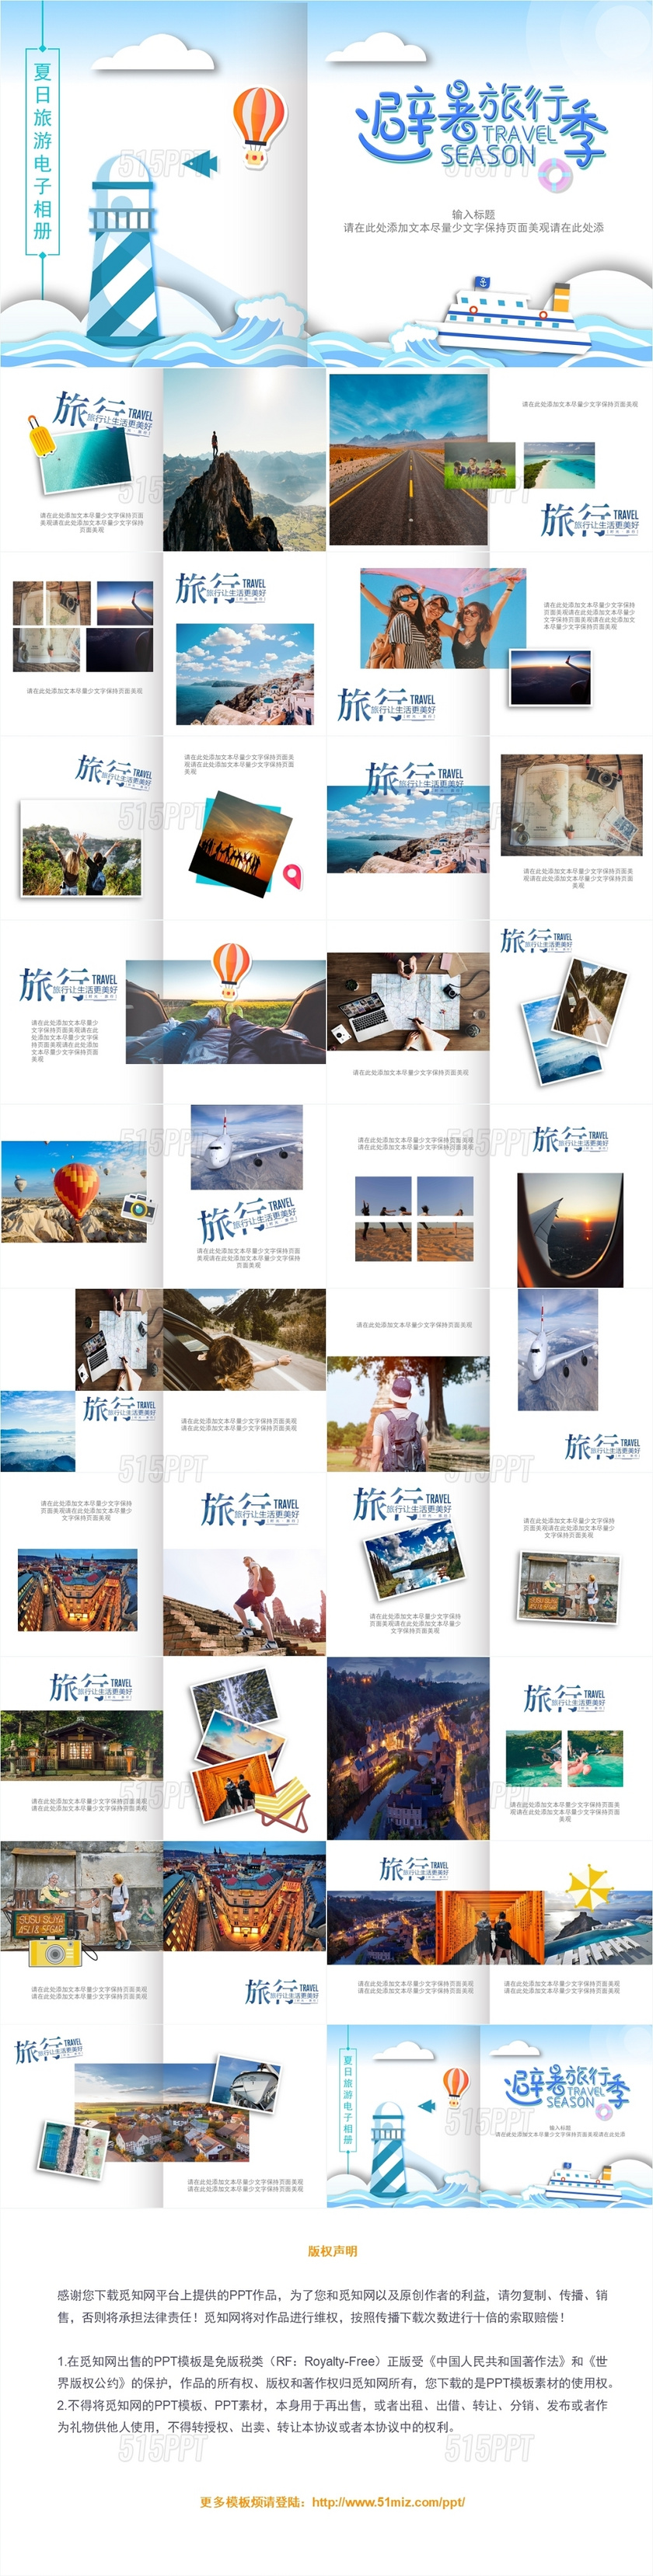 蓝色夏日暑假避暑旅游旅行电子相册旅行计划PPT模板